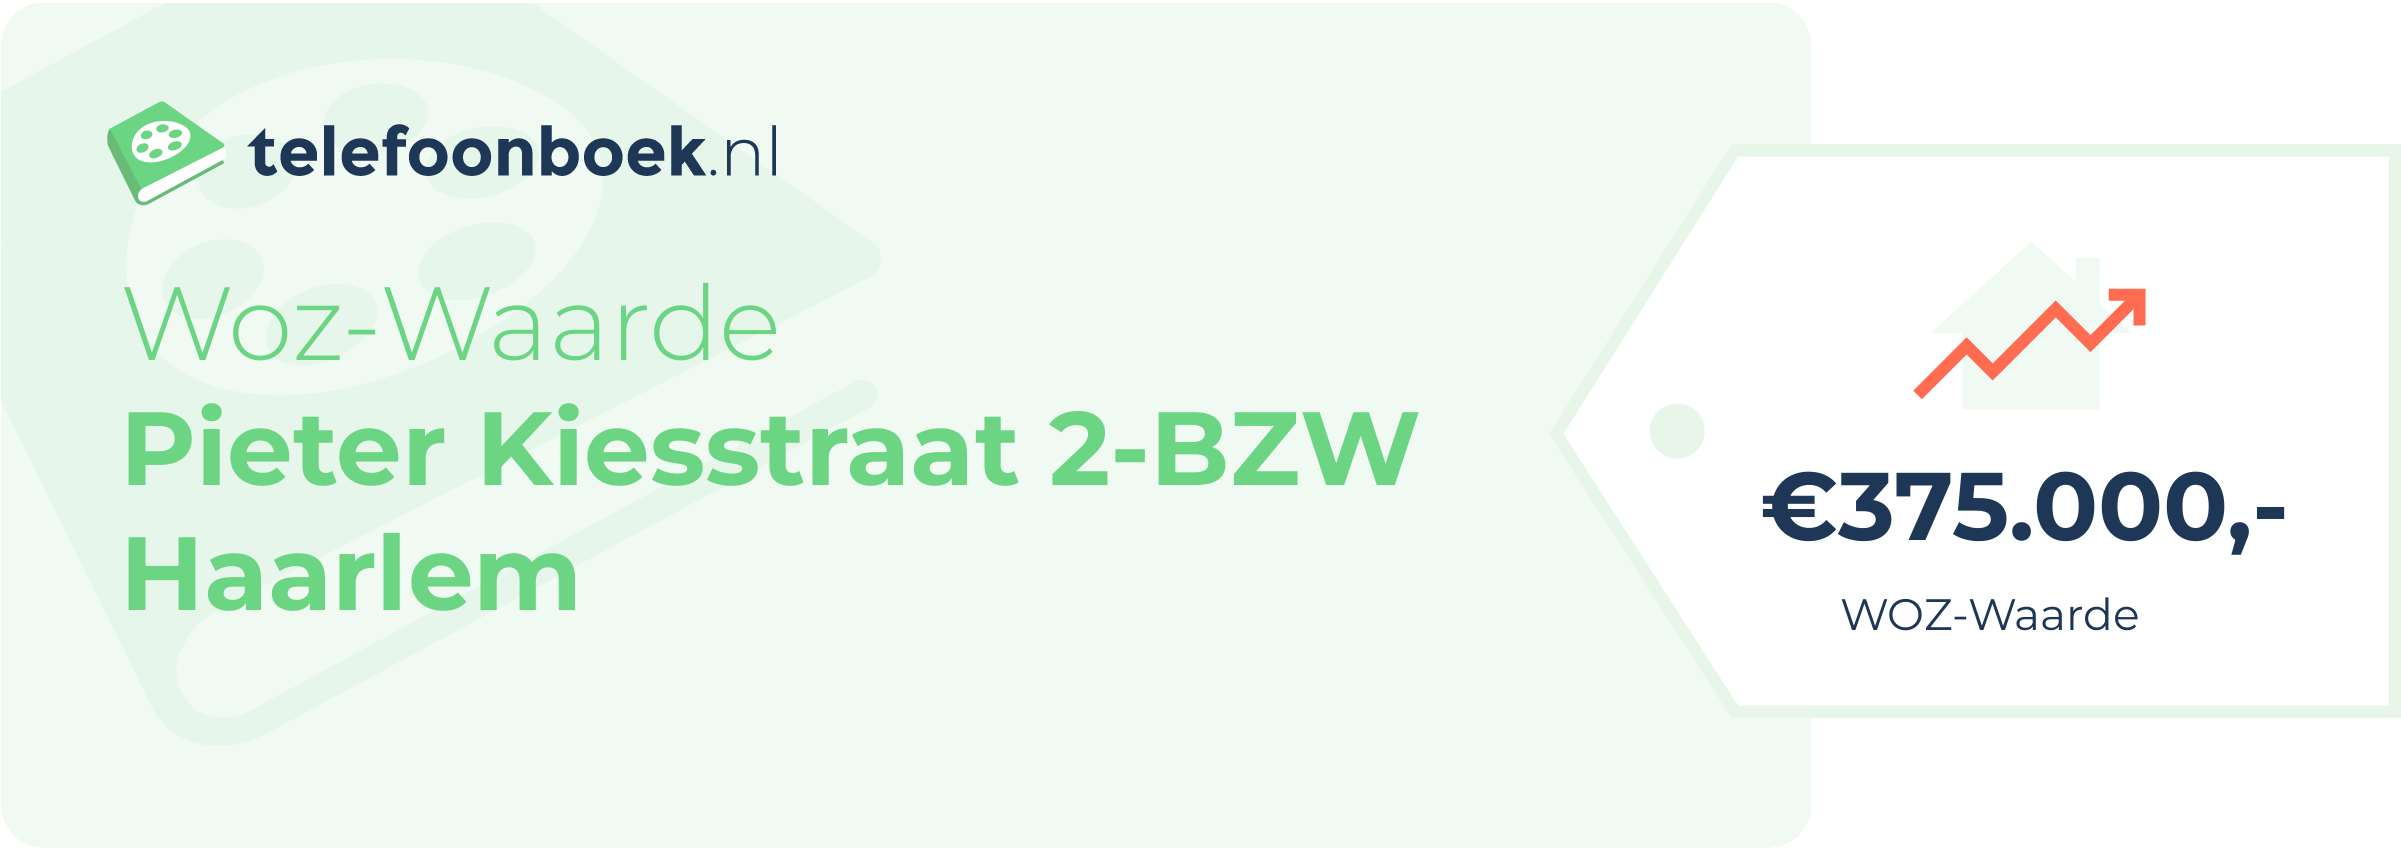 WOZ-waarde Pieter Kiesstraat 2-BZW Haarlem